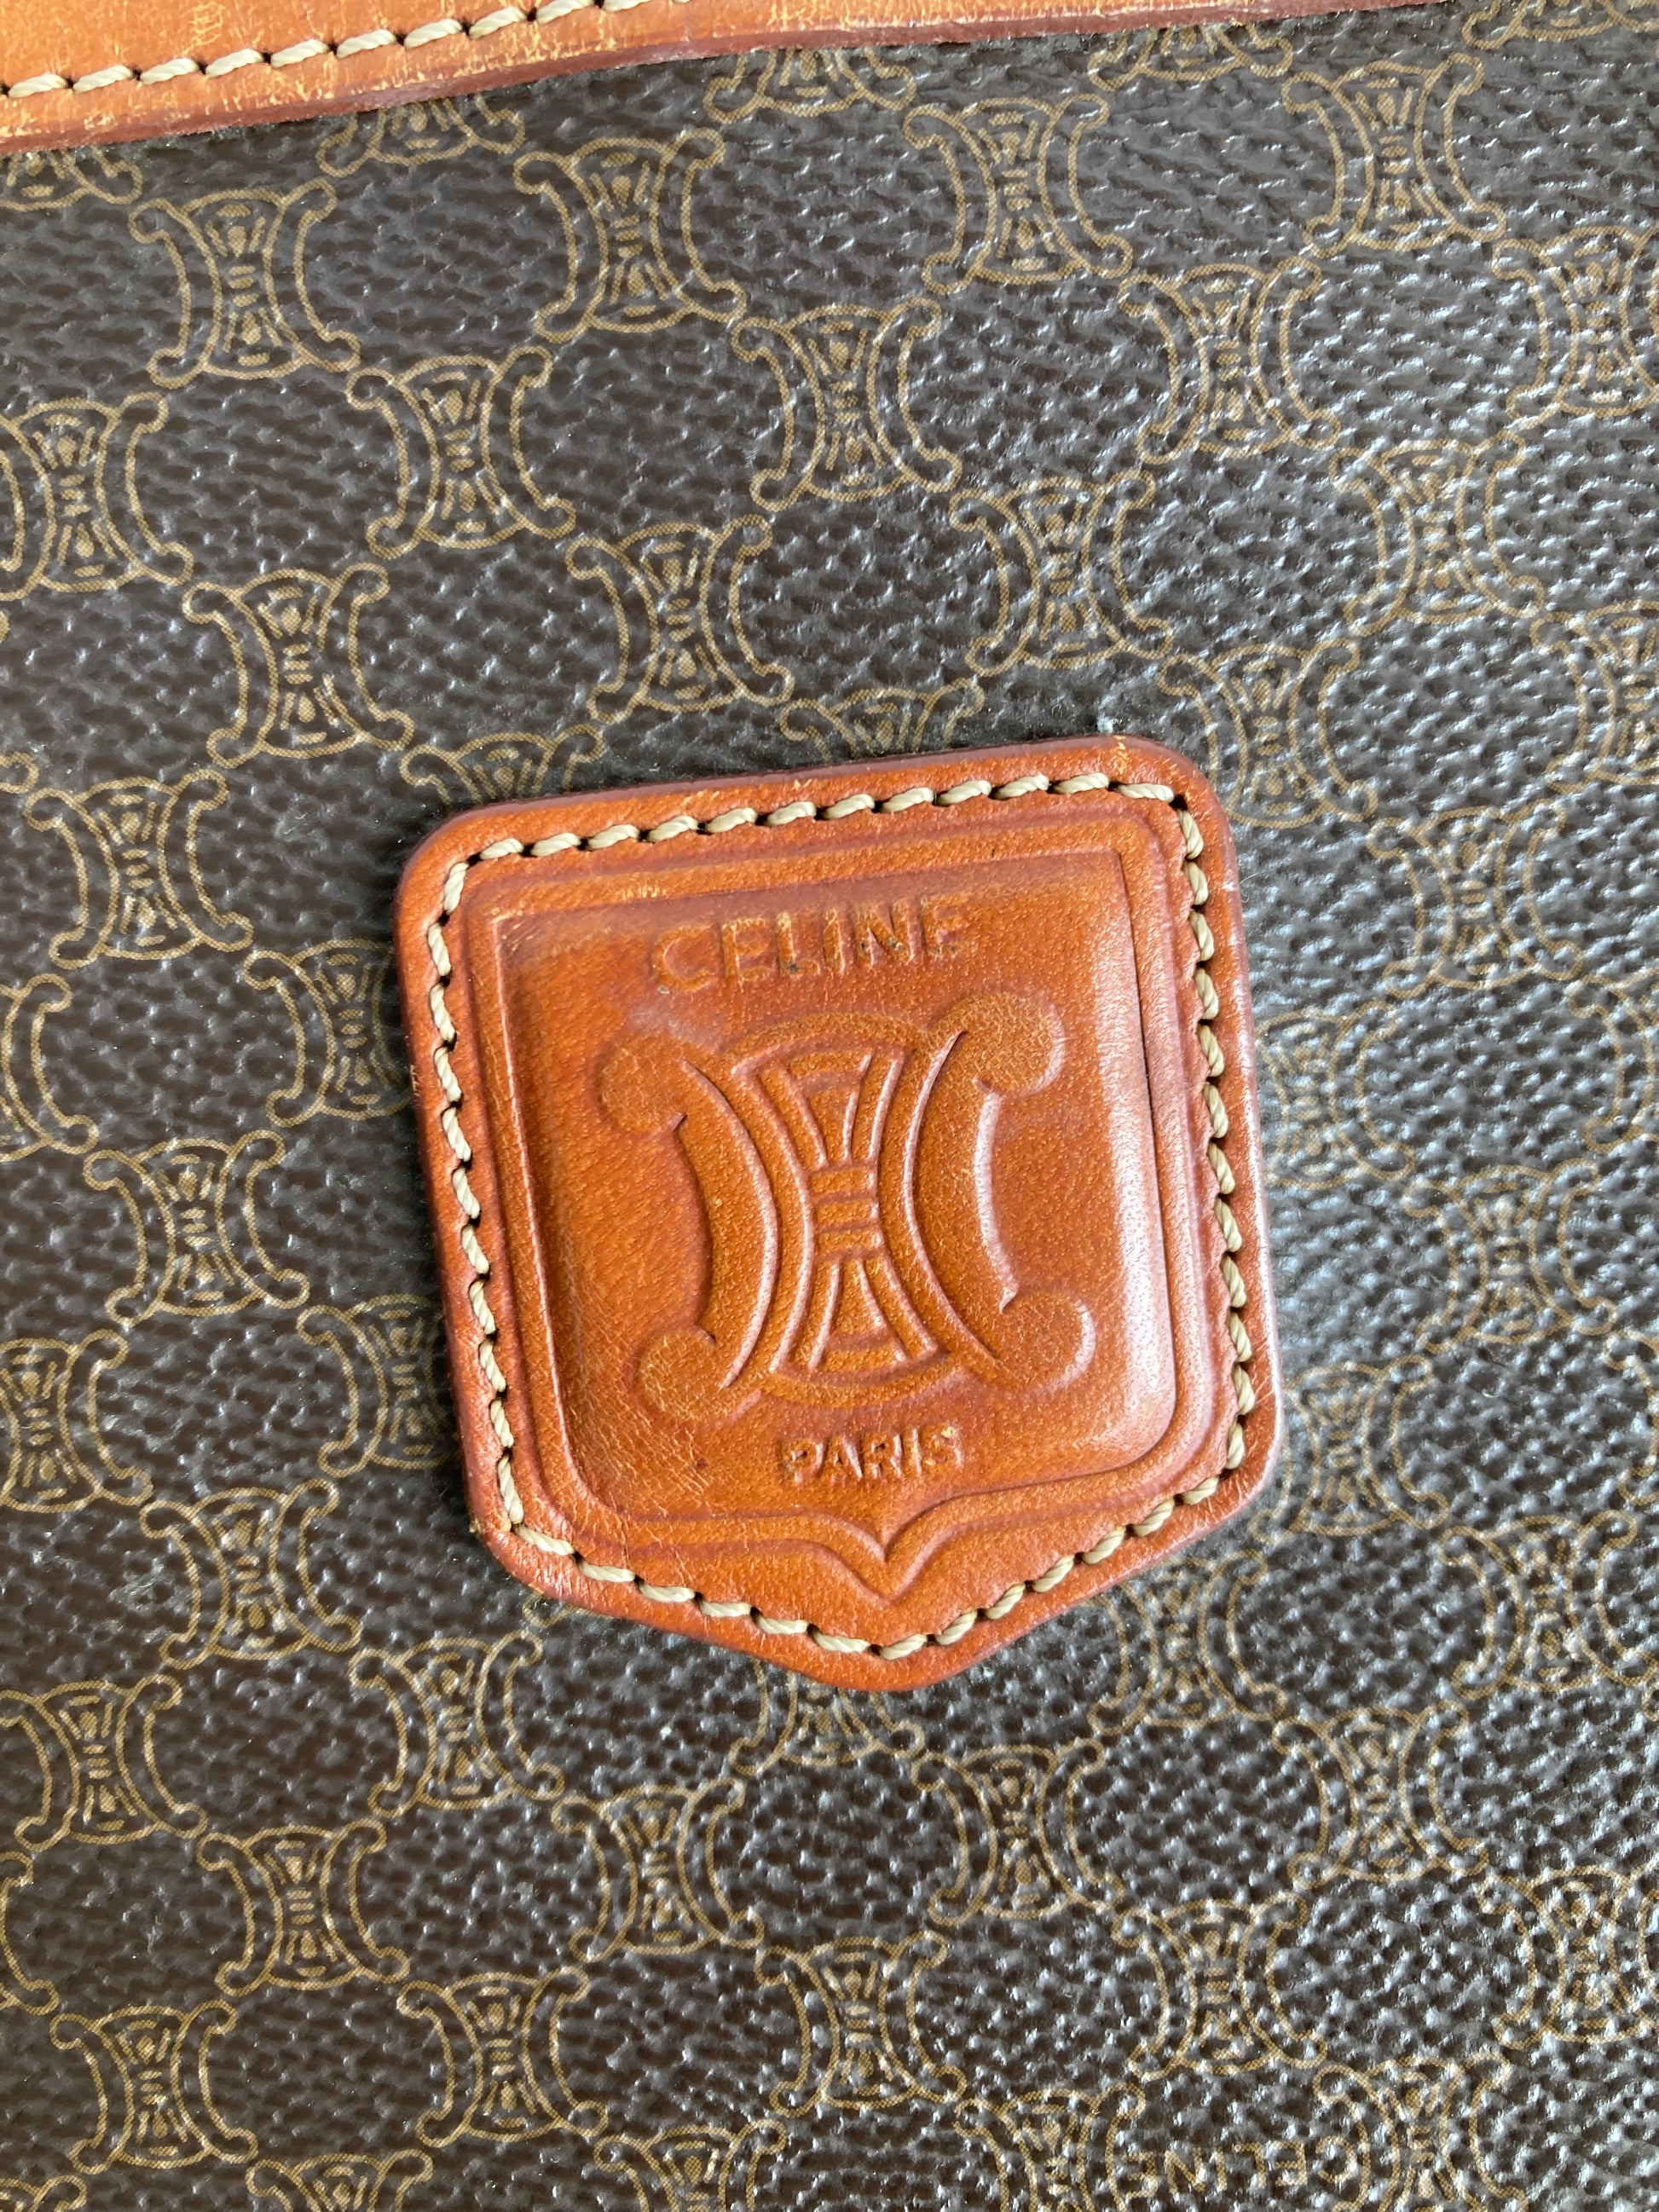 Celine Paris monogram handbag (Vintage)